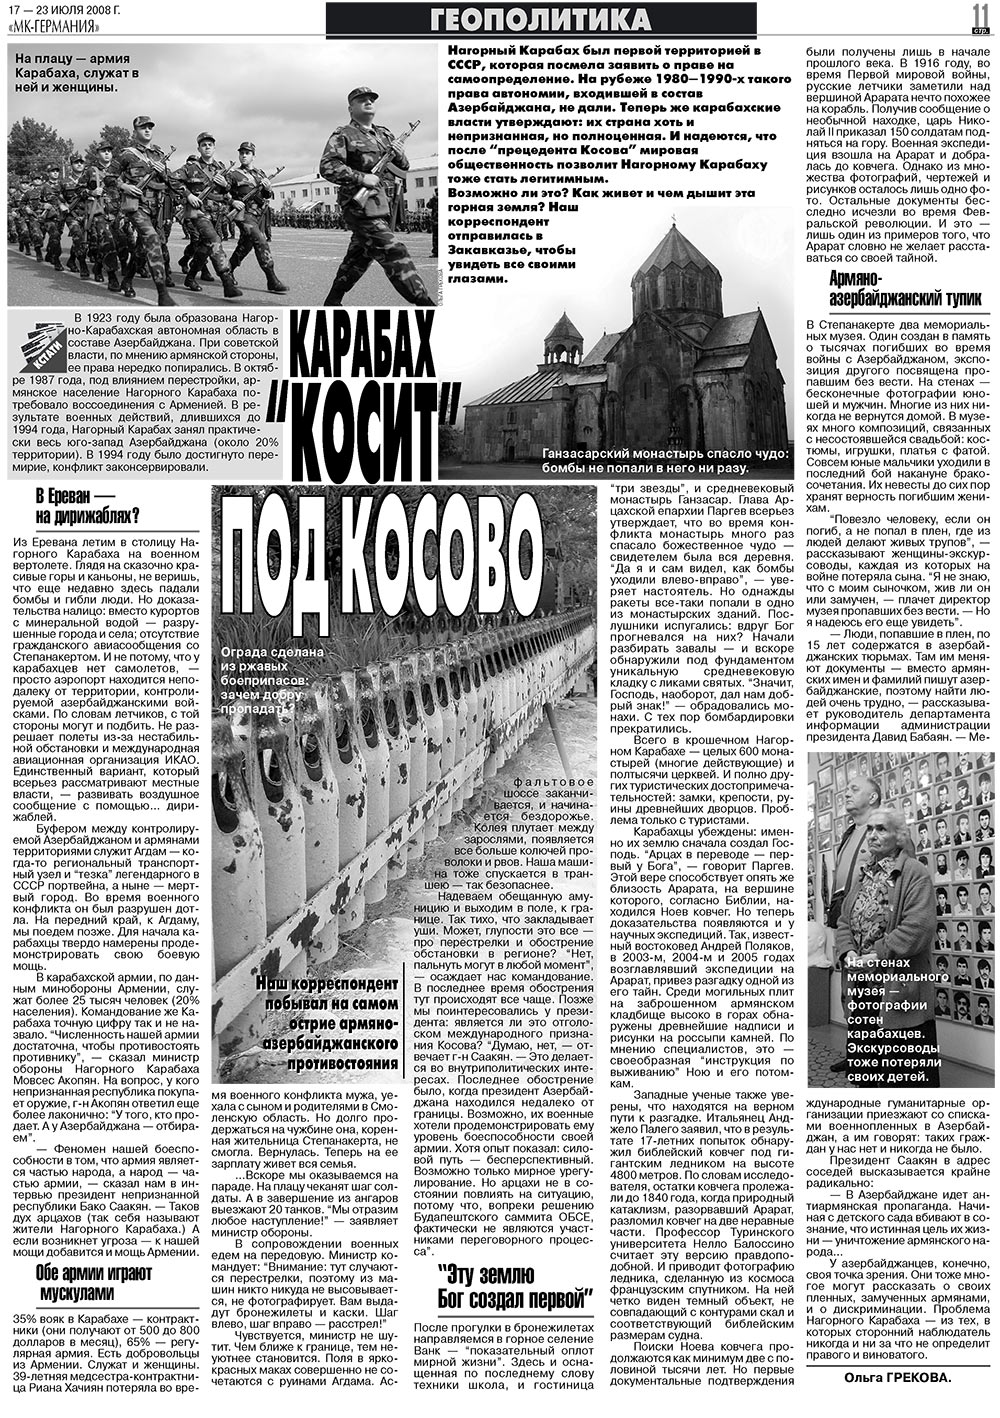 МК-Германия (газета). 2008 год, номер 29, стр. 11